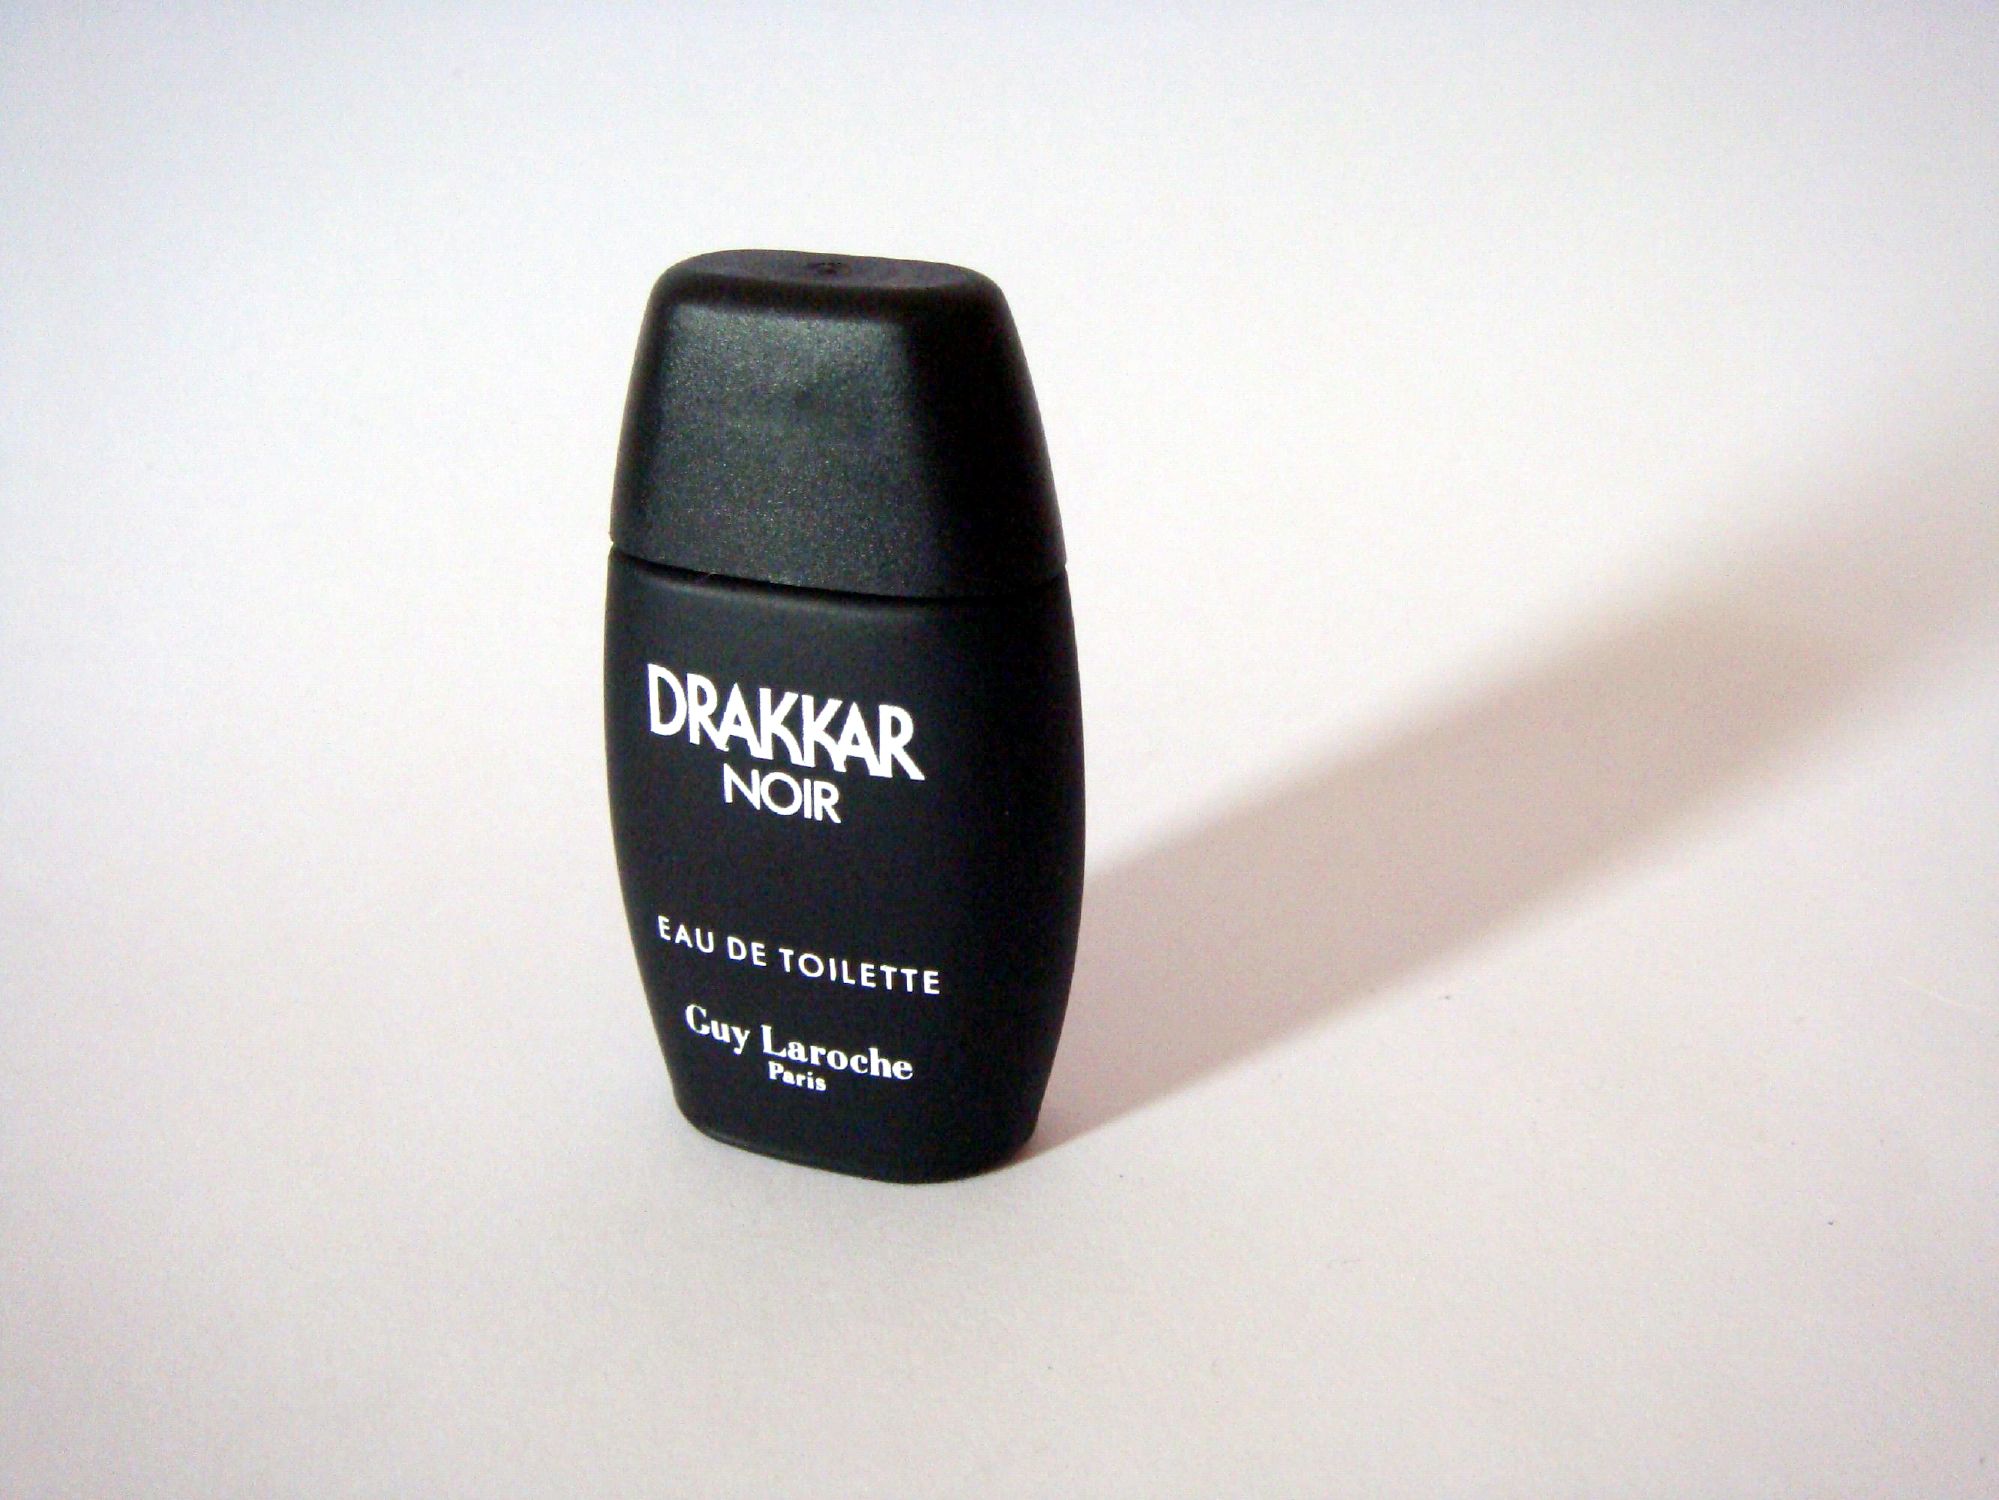 Drakkar noir perfume photo